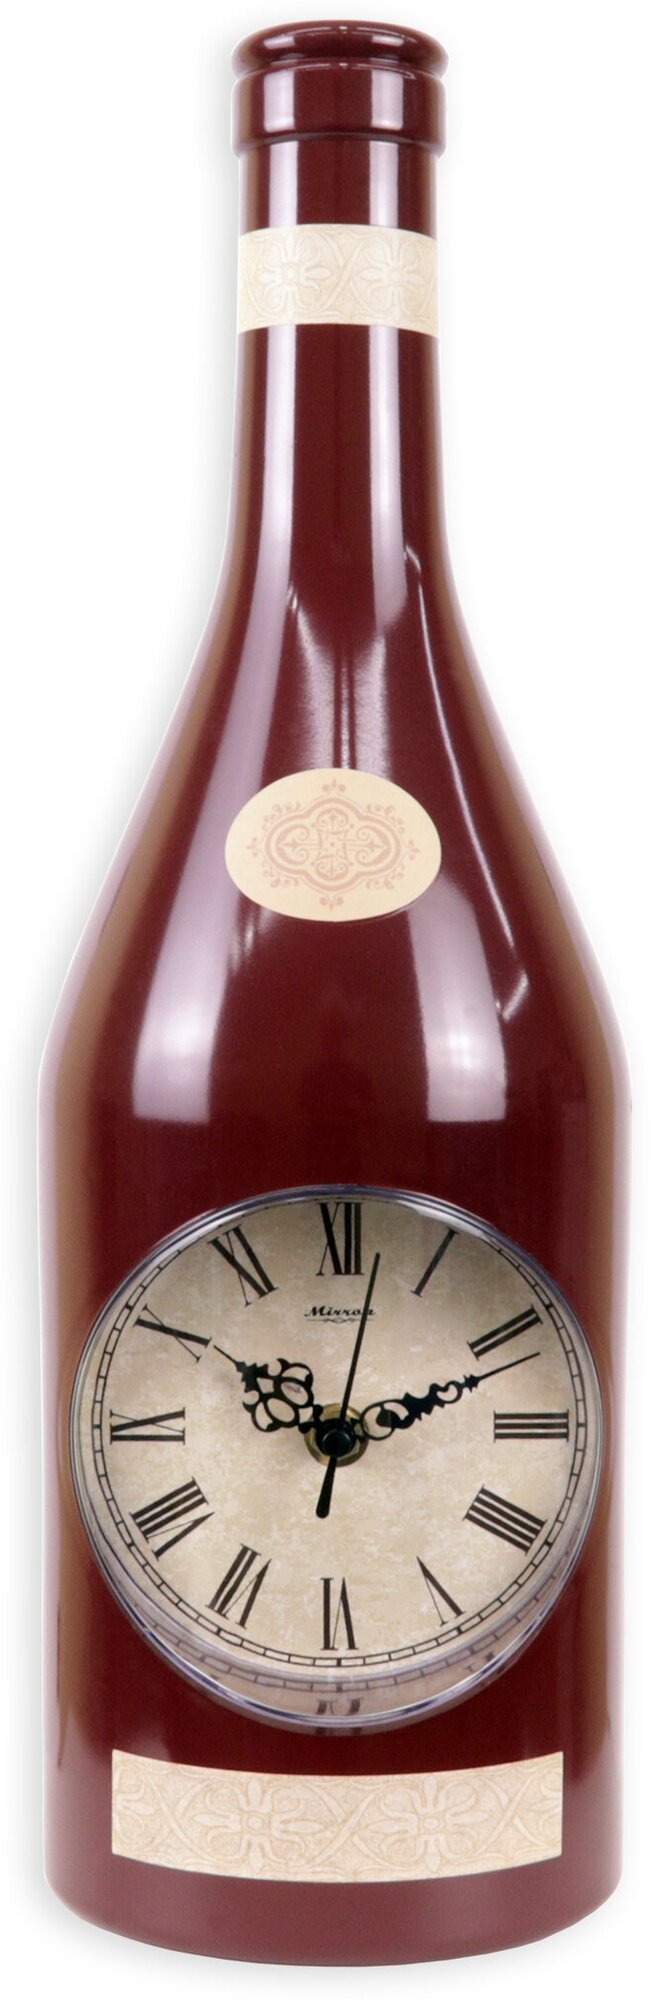 Кухонные настенные часы MIRRON 121-175 БР/Часы в форме бутылки/Бордовый цвет корпуса/Тематические часы/Оригинальные часы на кухню/Циферблат с римскими цифрами